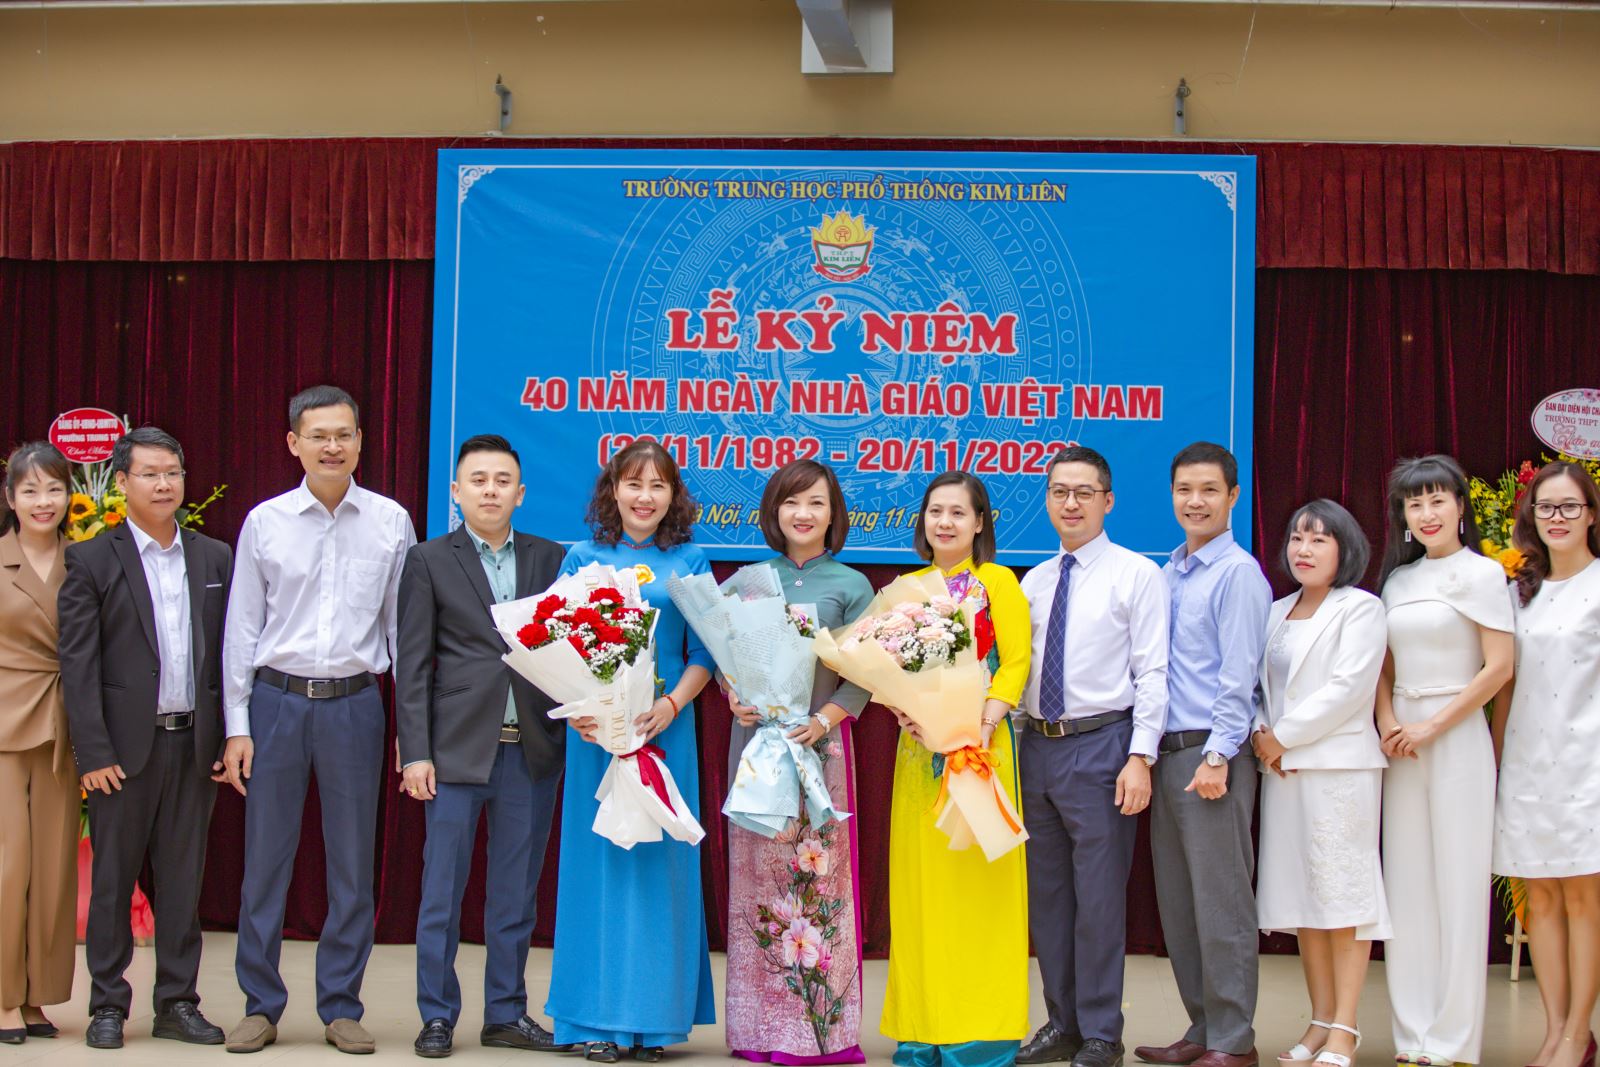 Trường THPT Kim Liên tổ chức Lễ kỷ niệm 40 năm ngày Nhà giáo Việt Nam  (20/11/1982 – 20/11/2022)